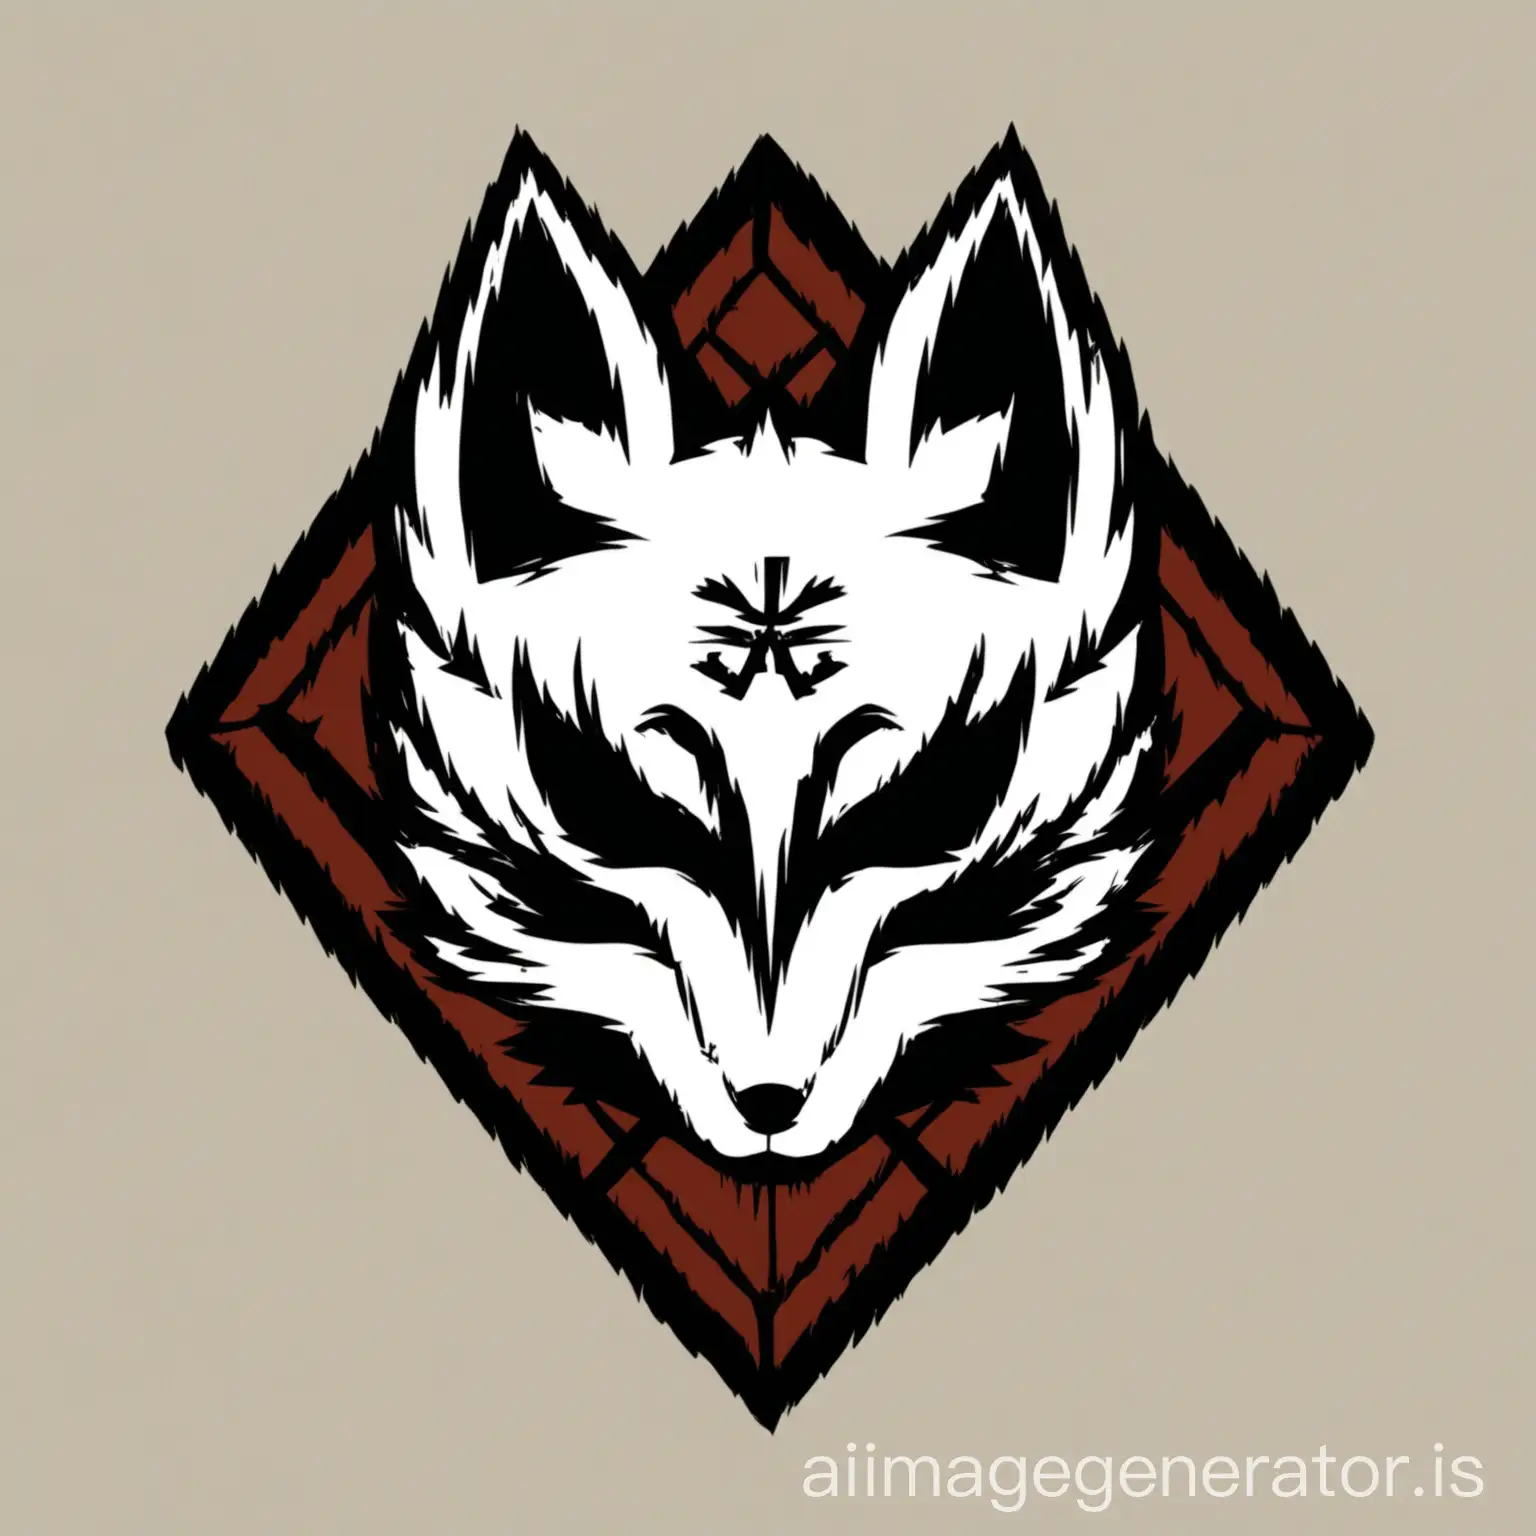 Fox-Head-Logo-Design-Featuring-Pejore-in-Prominent-Lower-Left-Corner